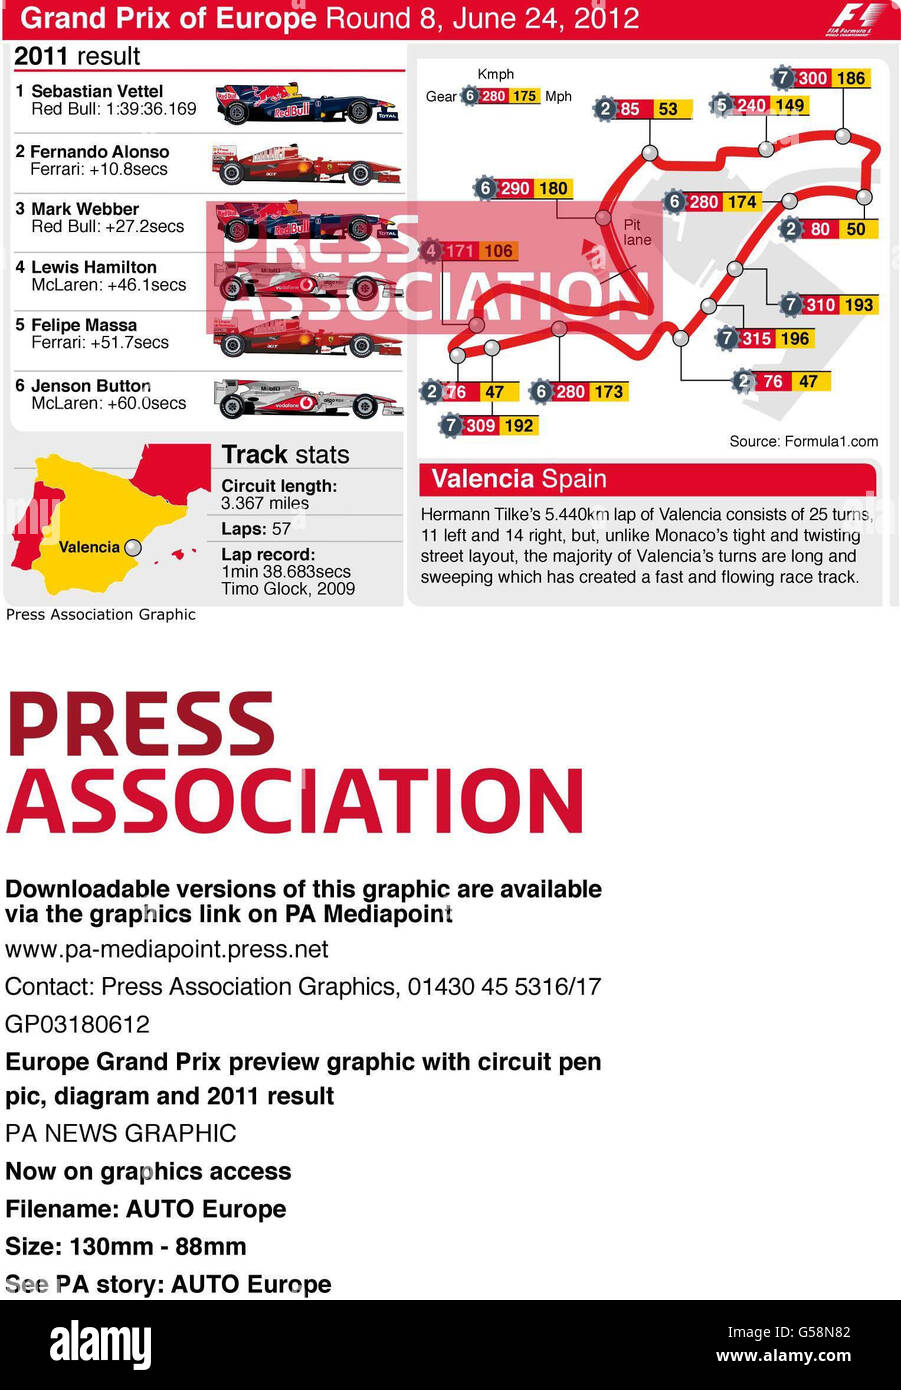 Anteprima del Gran Premio d'Europa con circuito pen-pic, diagramma e risultato 2011 Foto Stock